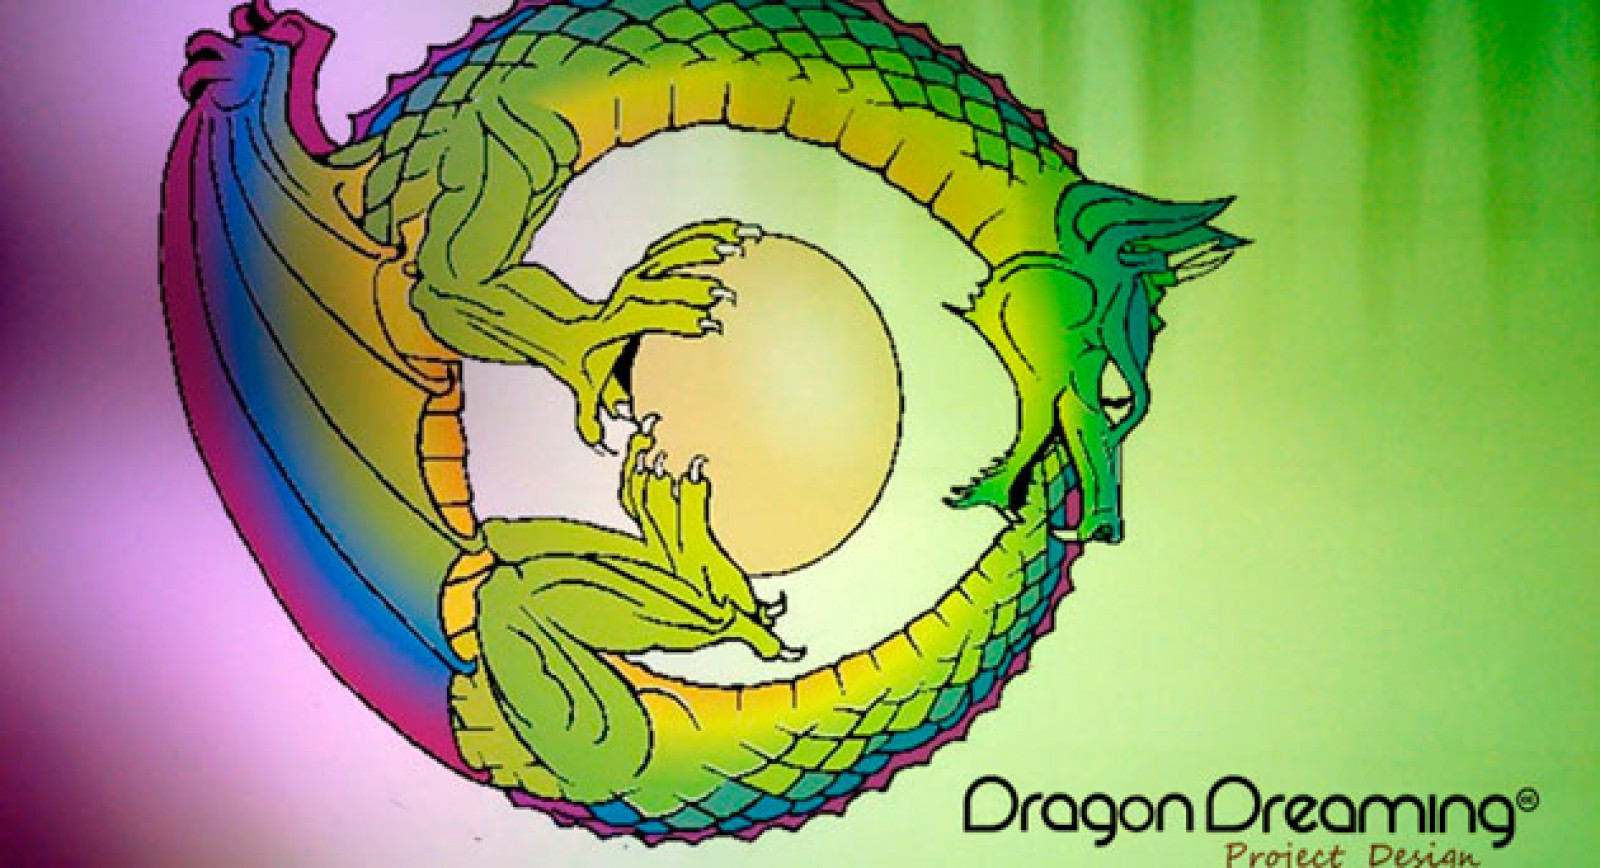 Dragon Dreaming: diseña proyectos para el cambio sostenible